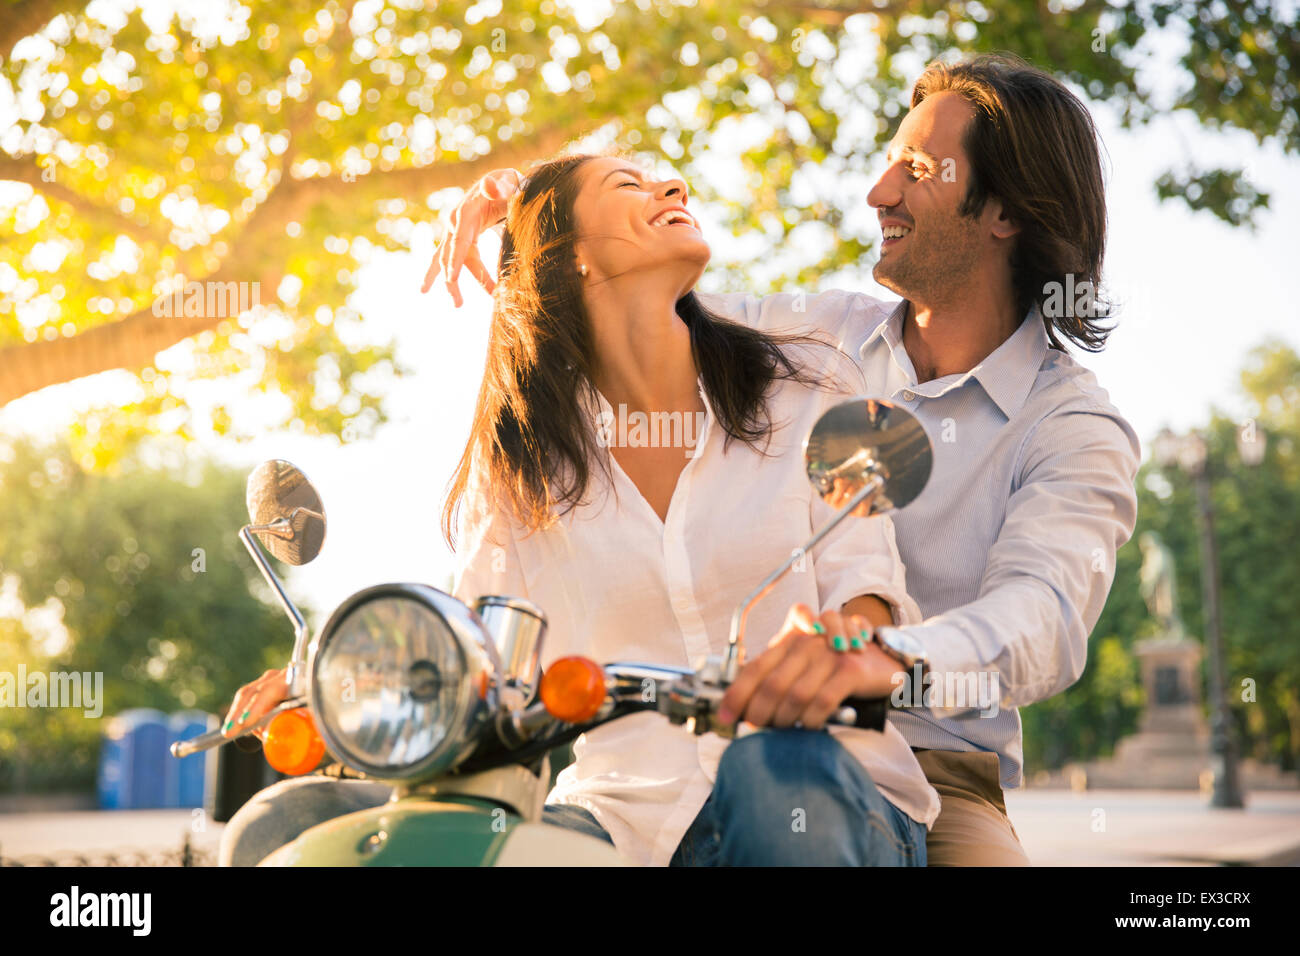 Laughing couple flirting européenne en scooter dans la ville Banque D'Images